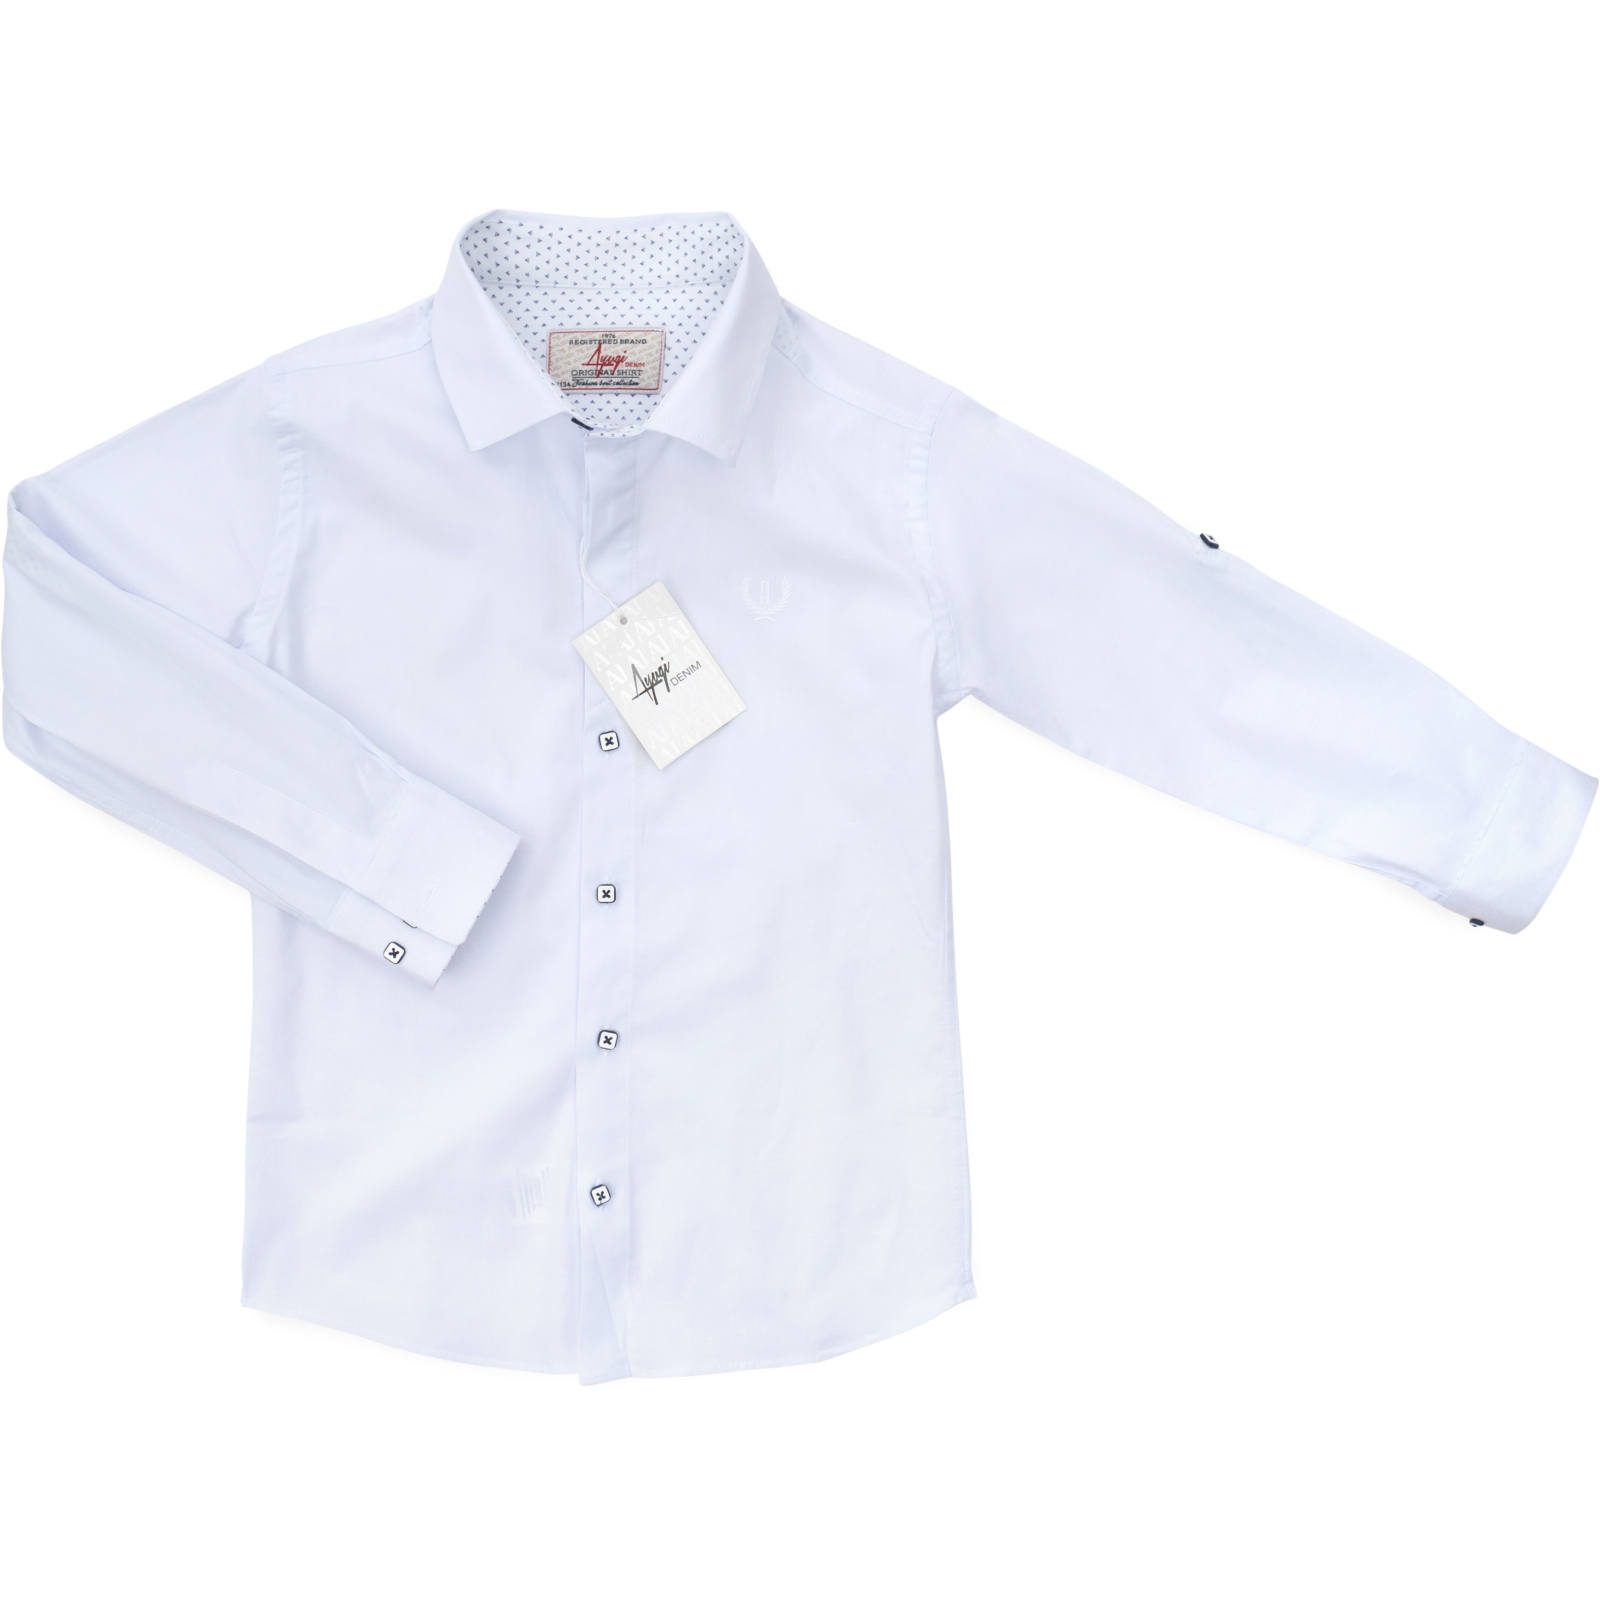 Рубашка A-Yugi для школы (18106-134B-white)